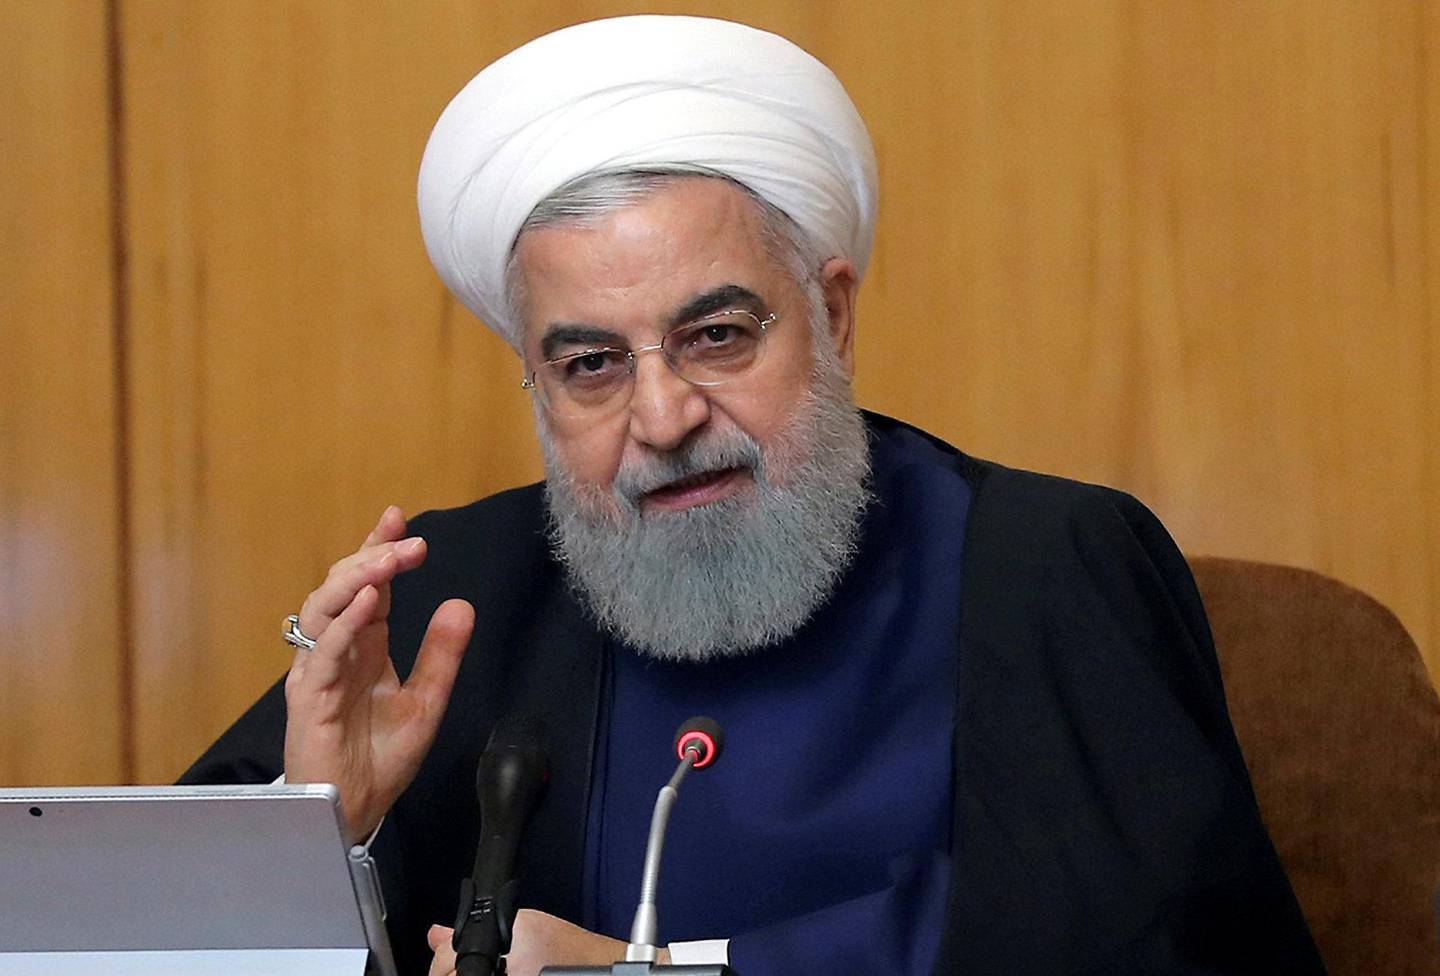 STERKE ORD: – Vi skal gjøre motstand for å få USA til å forstå at de går i feil retning, sier Irans president Hassan Rouhani.  FOTO: NTB SCANPIX